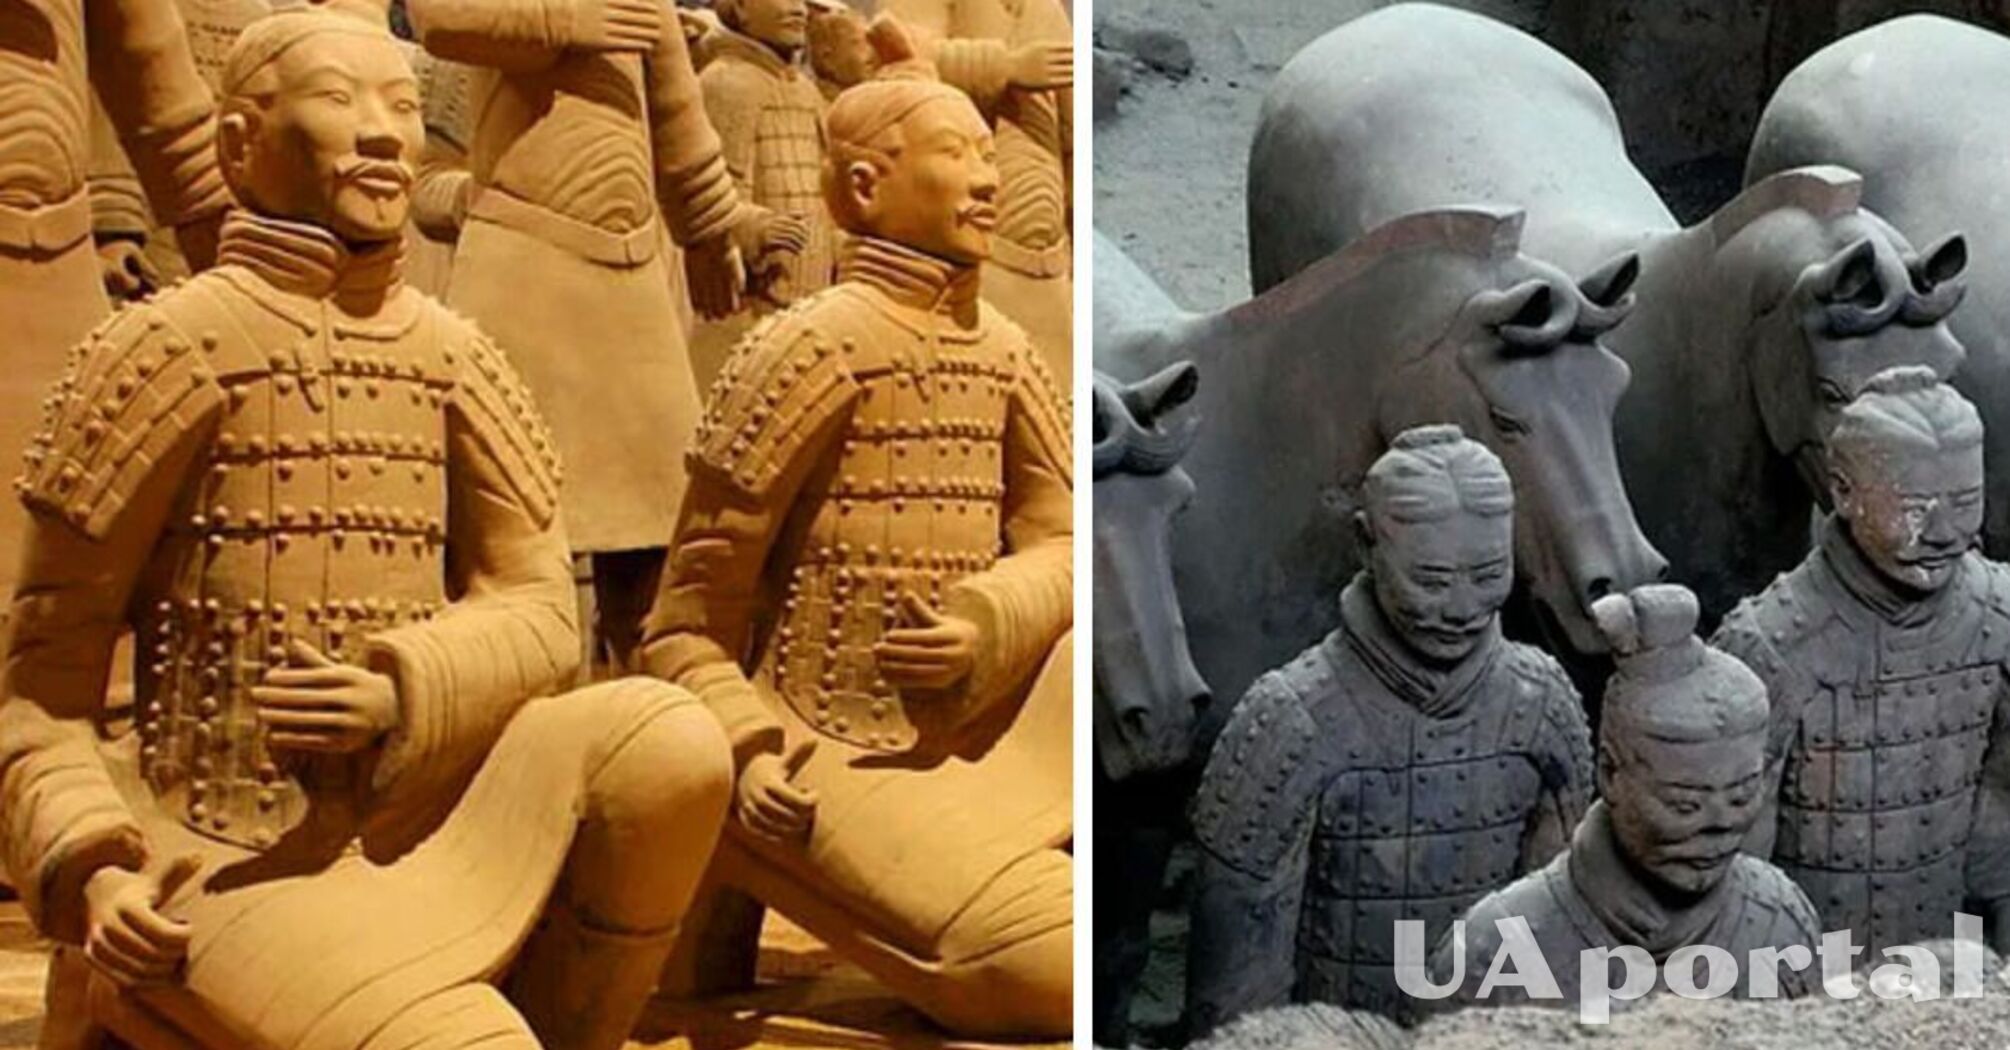 В Китае обнаружили более 220 новых статуй терракотовых воинов, похороненных в 210 году до н.э